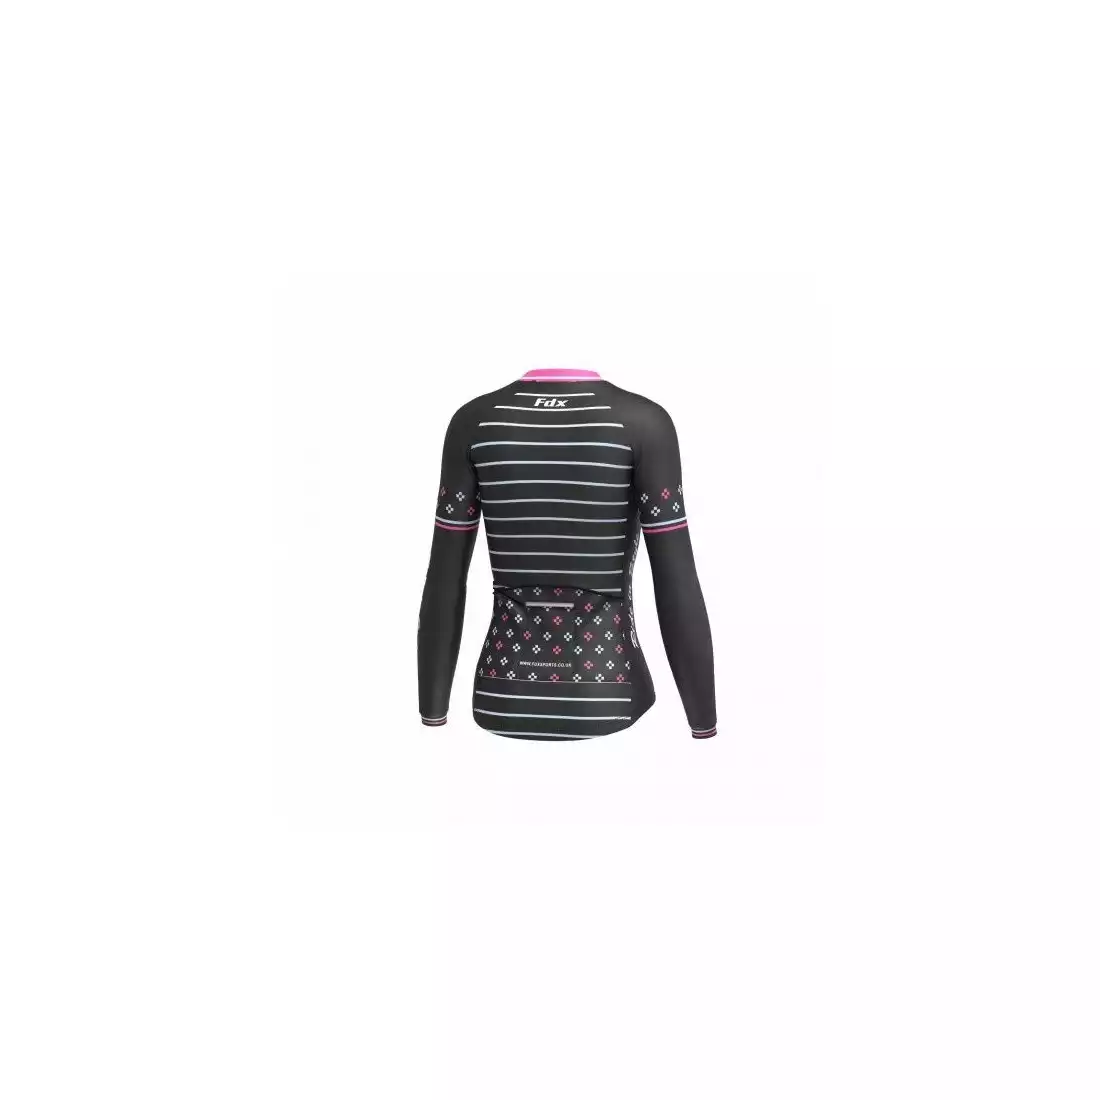 FDX 1480 damska ocieplana bluza rowerowa czarno-różowa